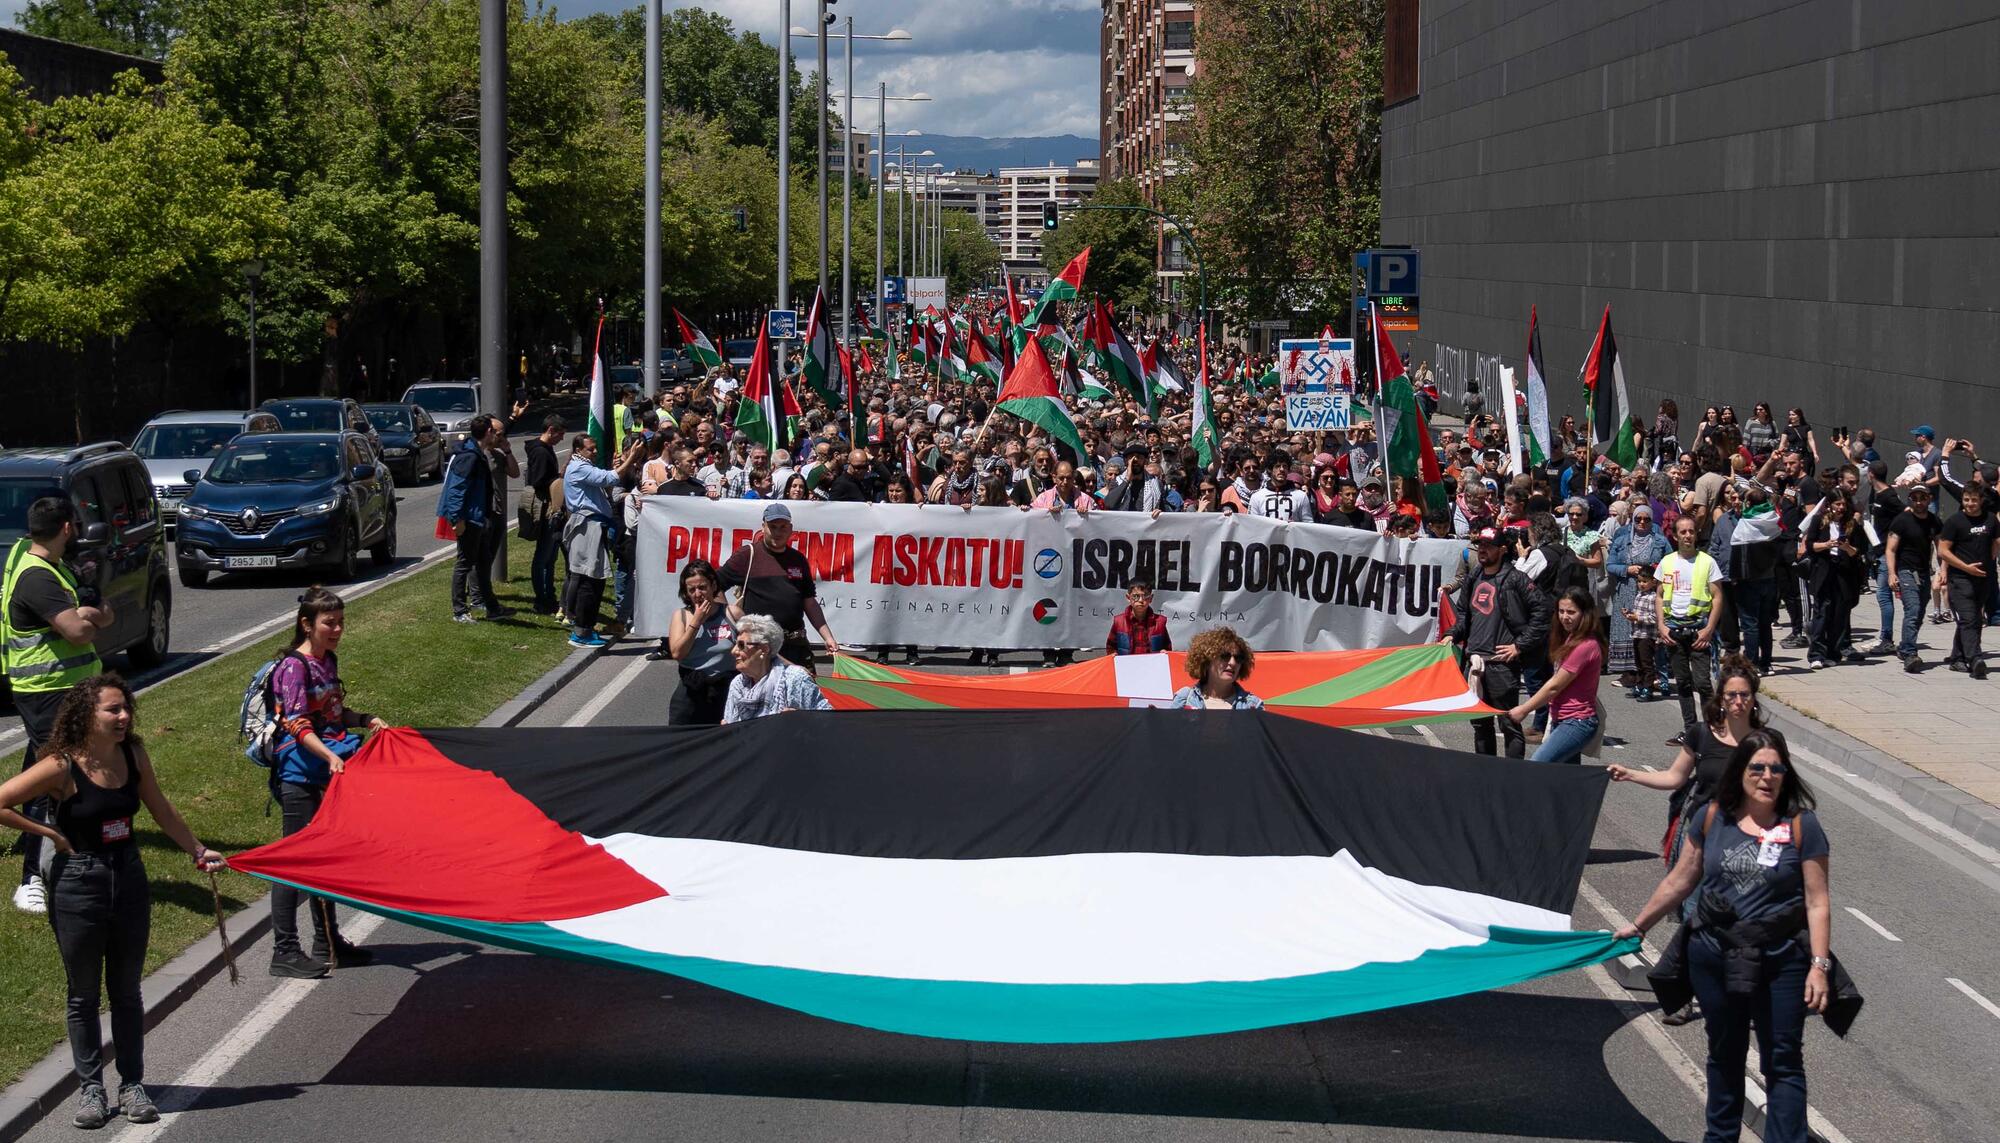  La multitudinaria manifestación en Iruñea pide el boicot a productos de Israel